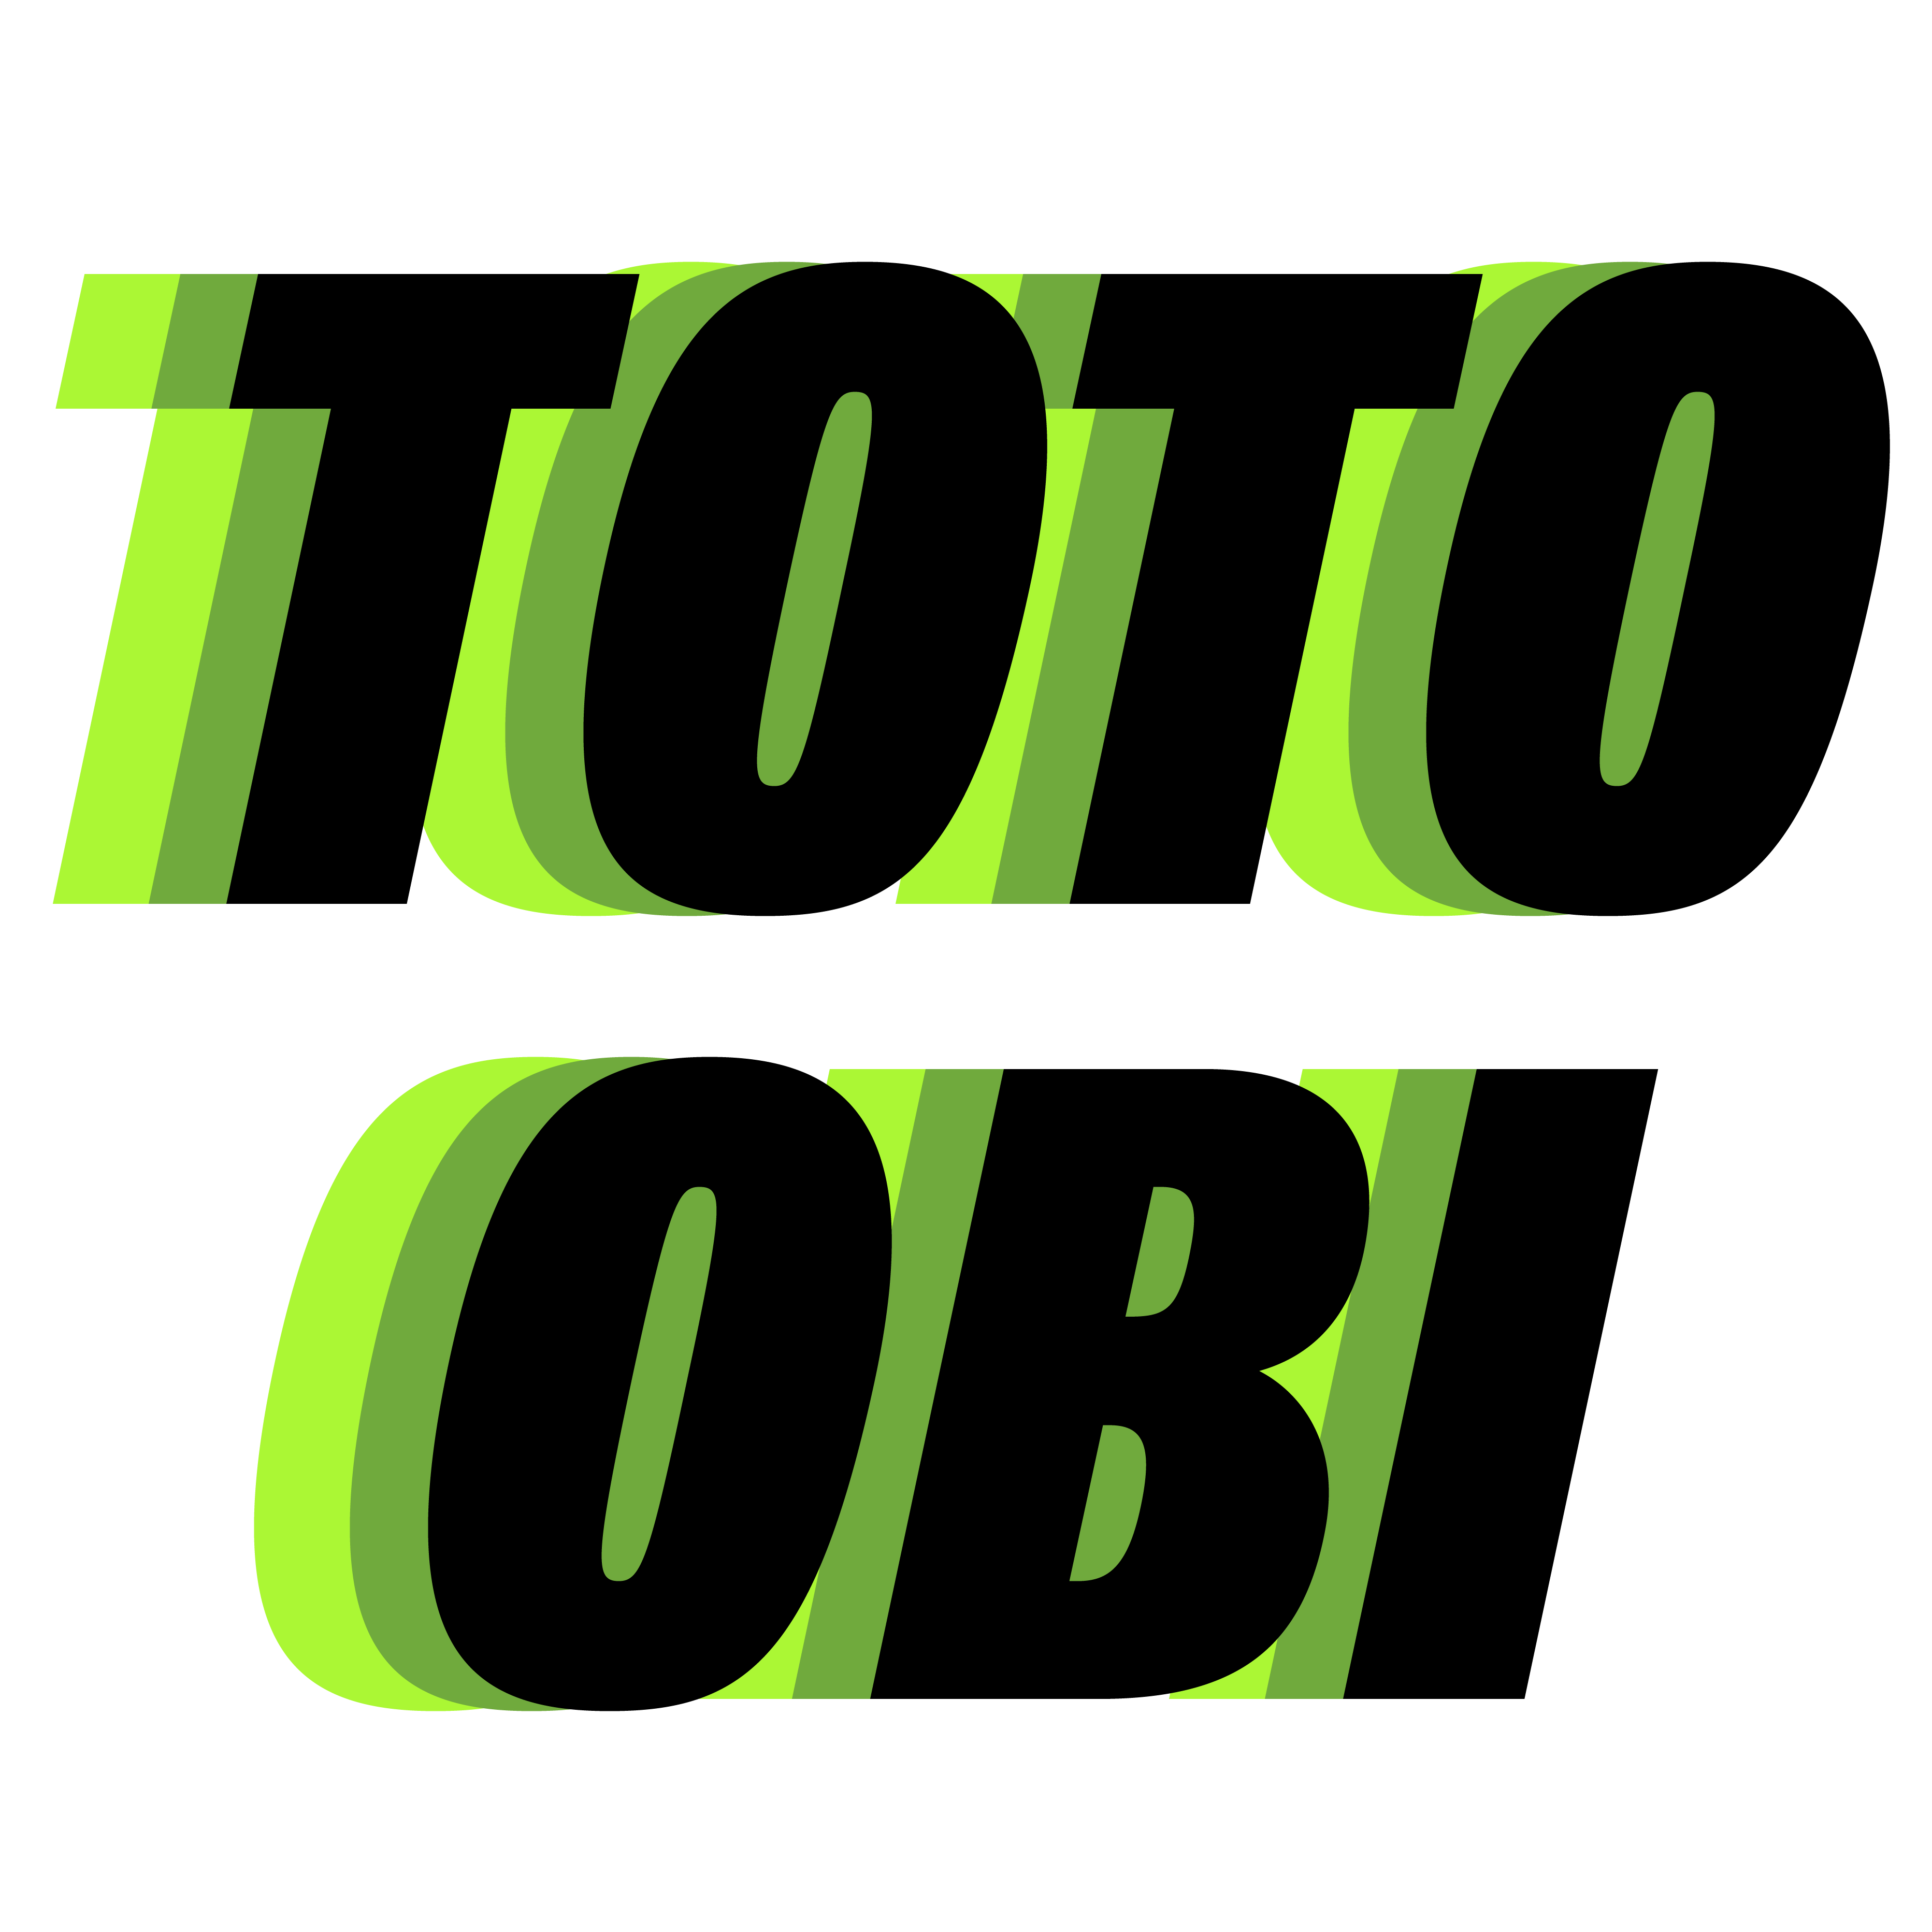 Tochukwu Obi